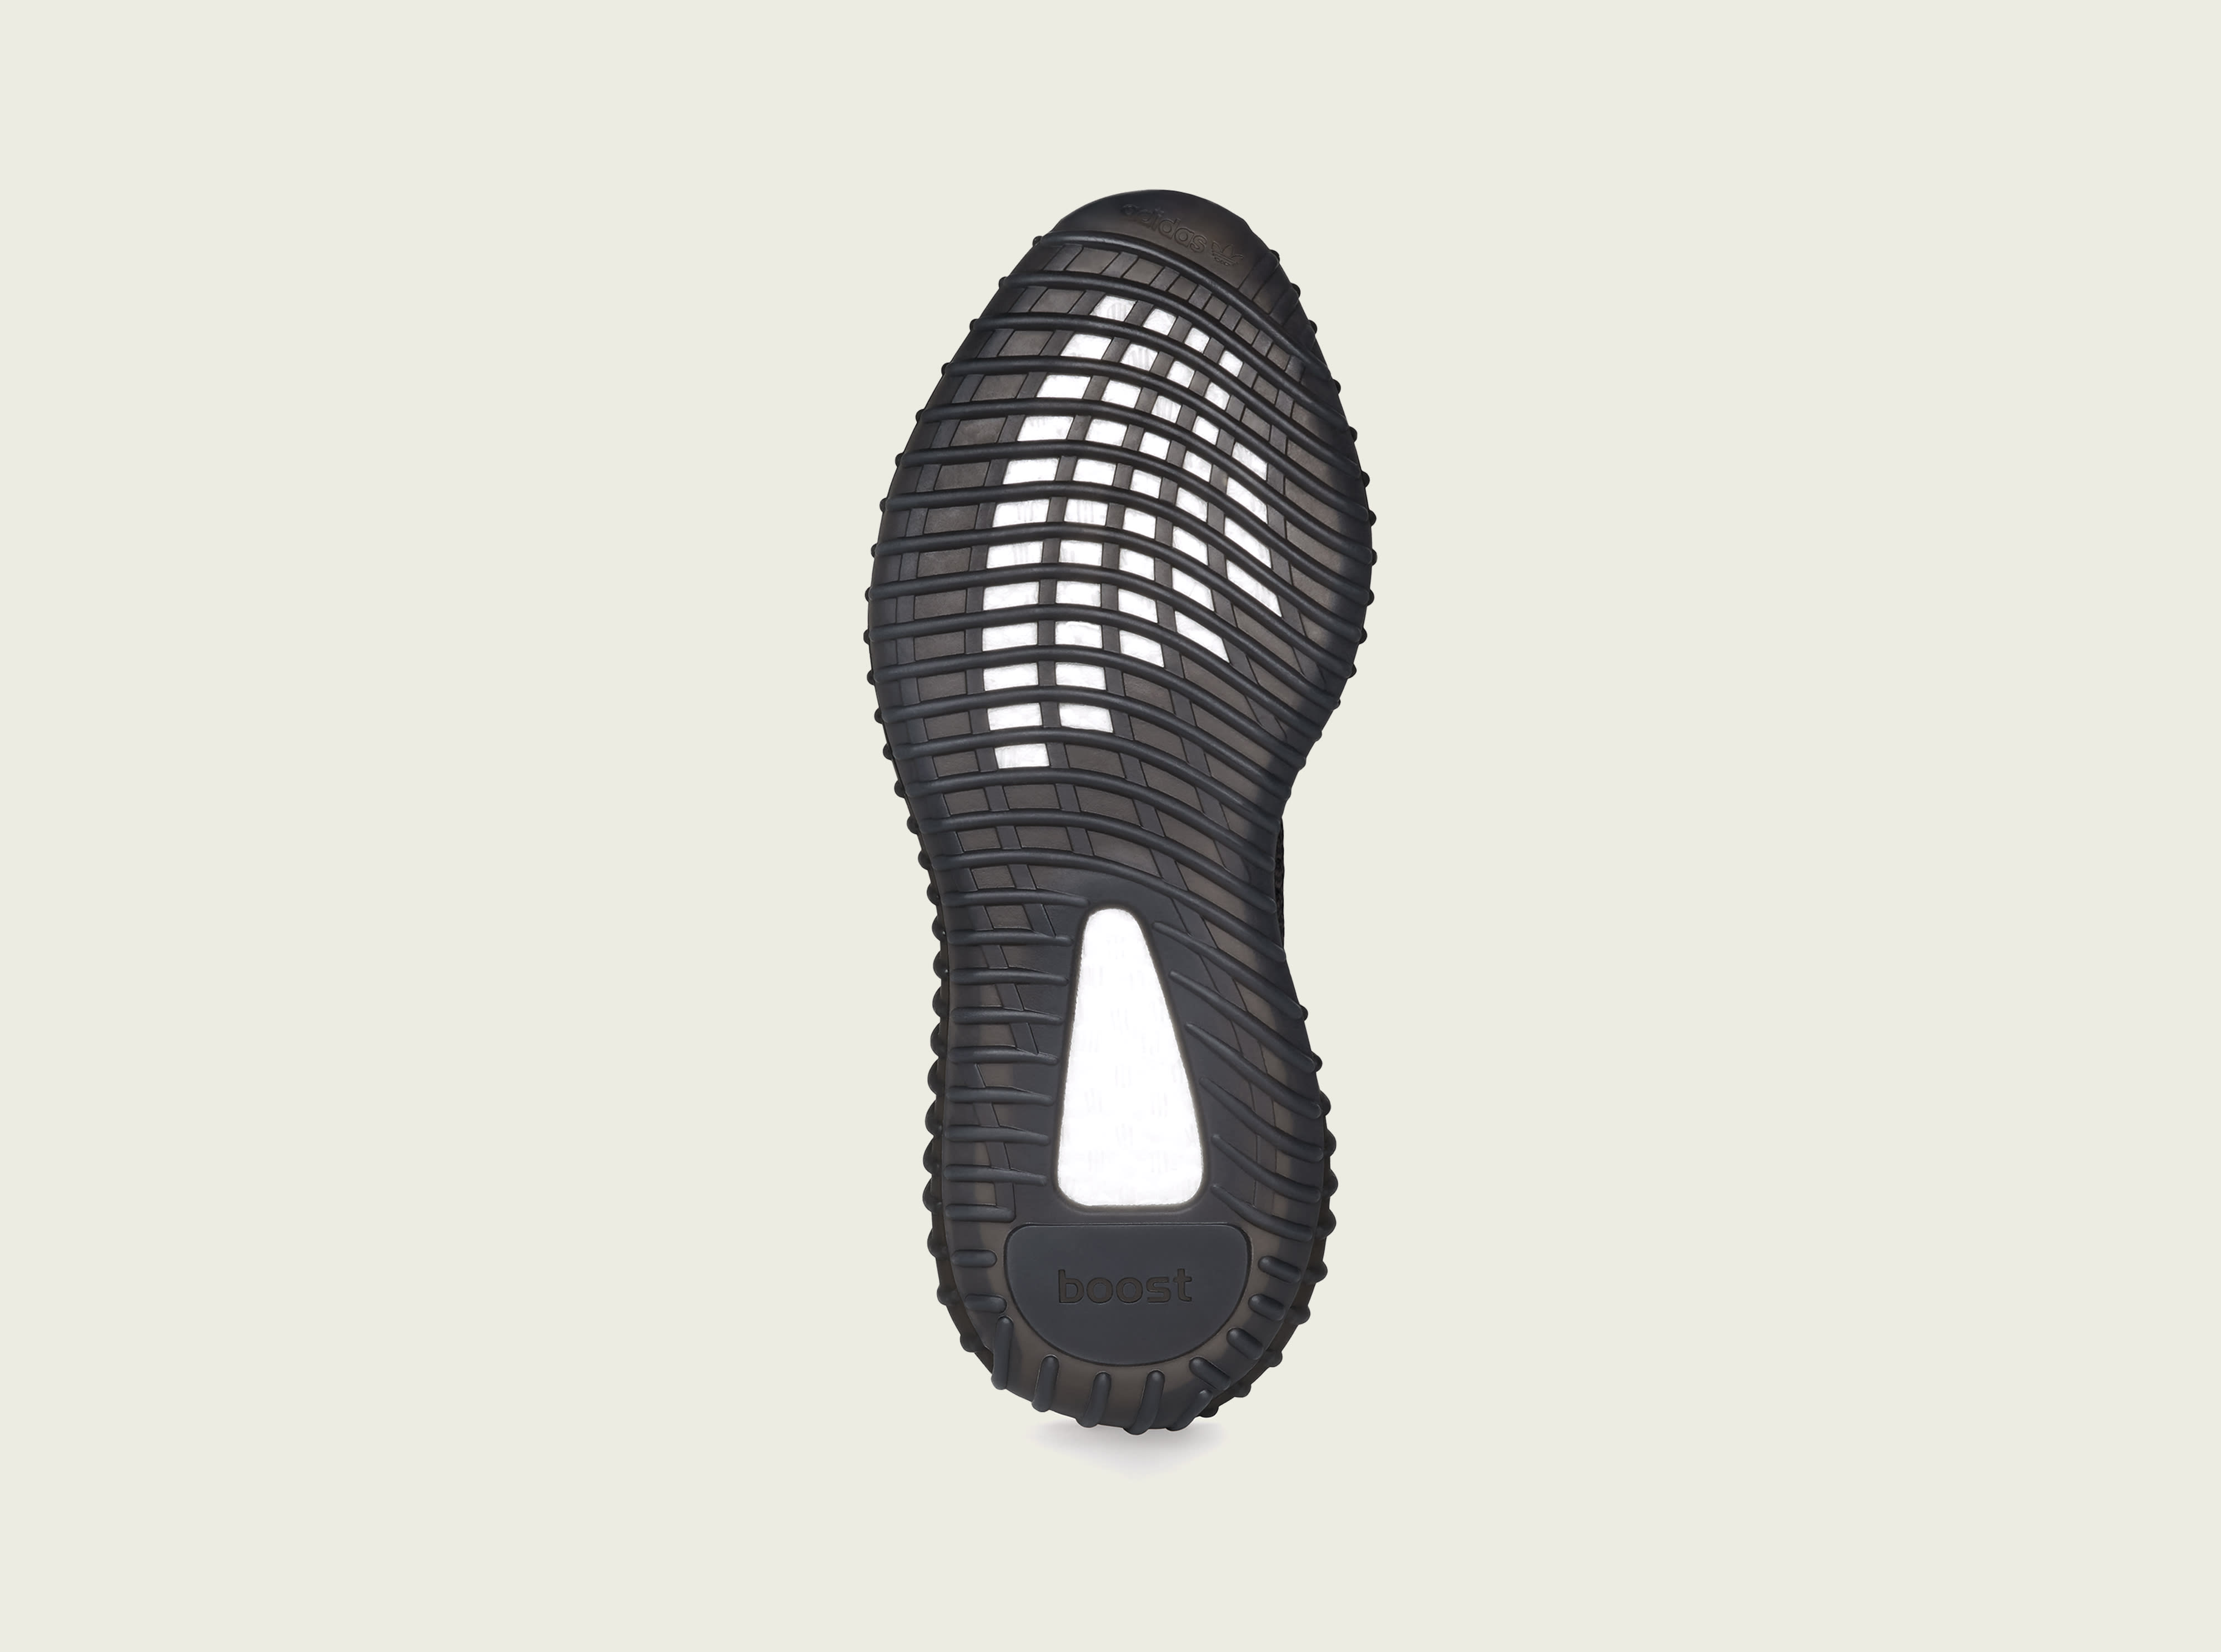 Adidas Yeezy Boost 350 V2 'Black Reflective' (Bottom)